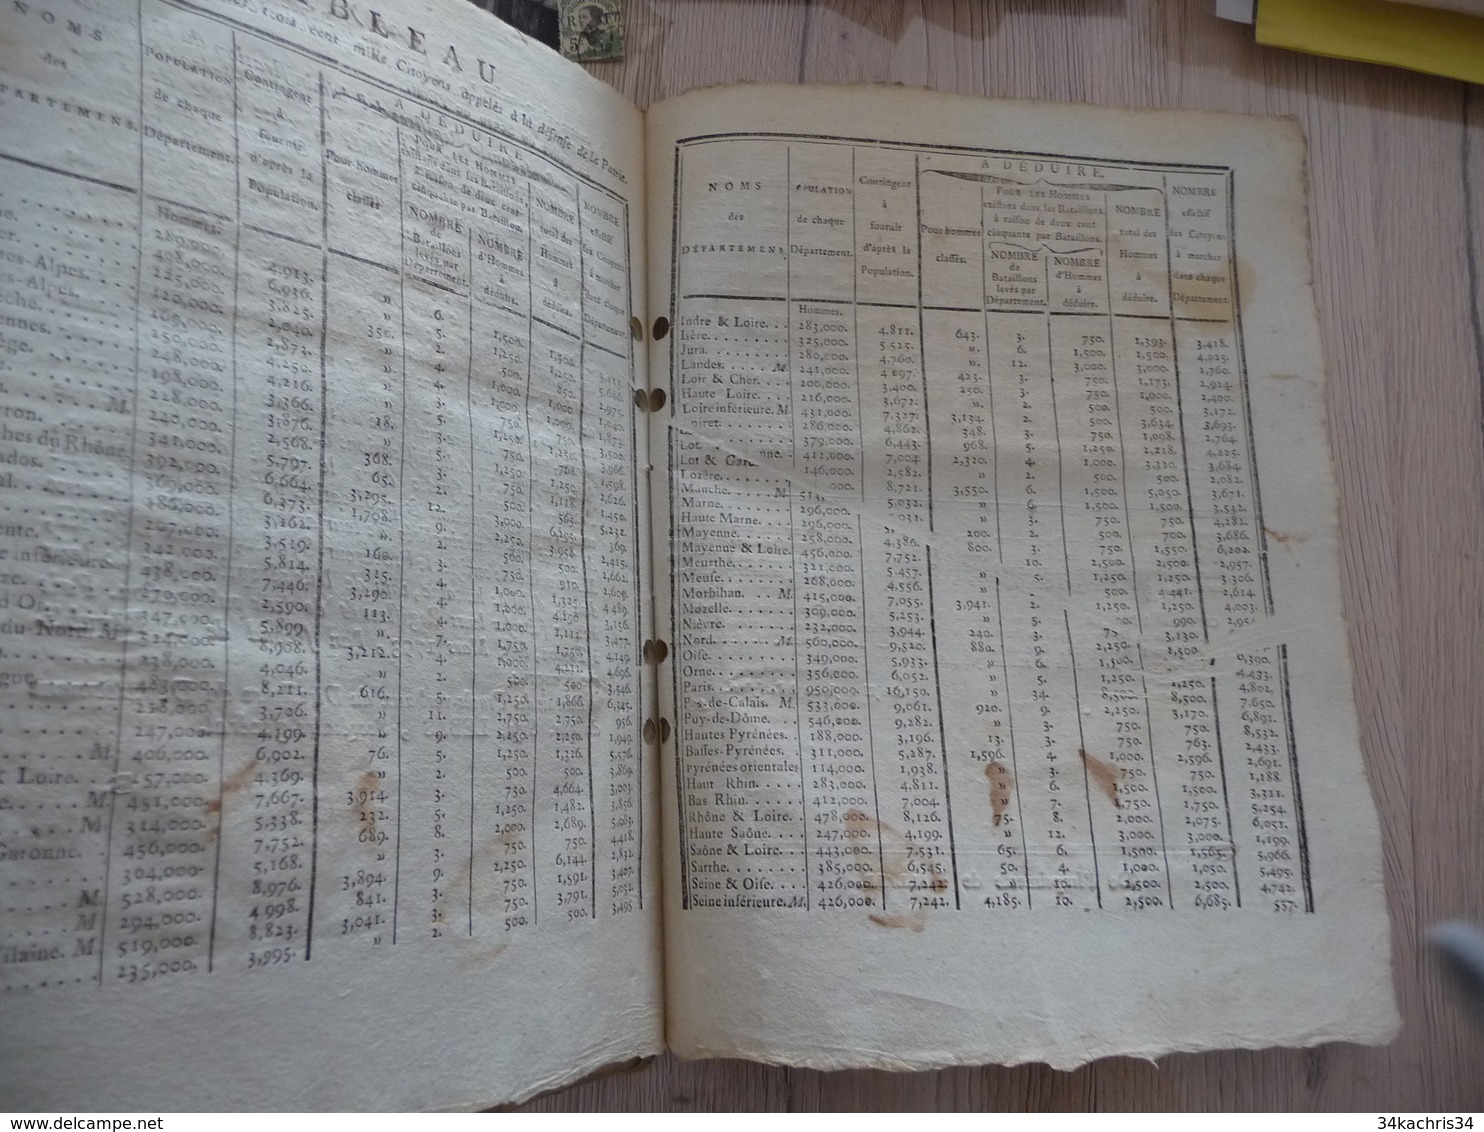 Décret Convention Nationale Février 1793 Armée organisation recrutement 32 pages trous d'archivage